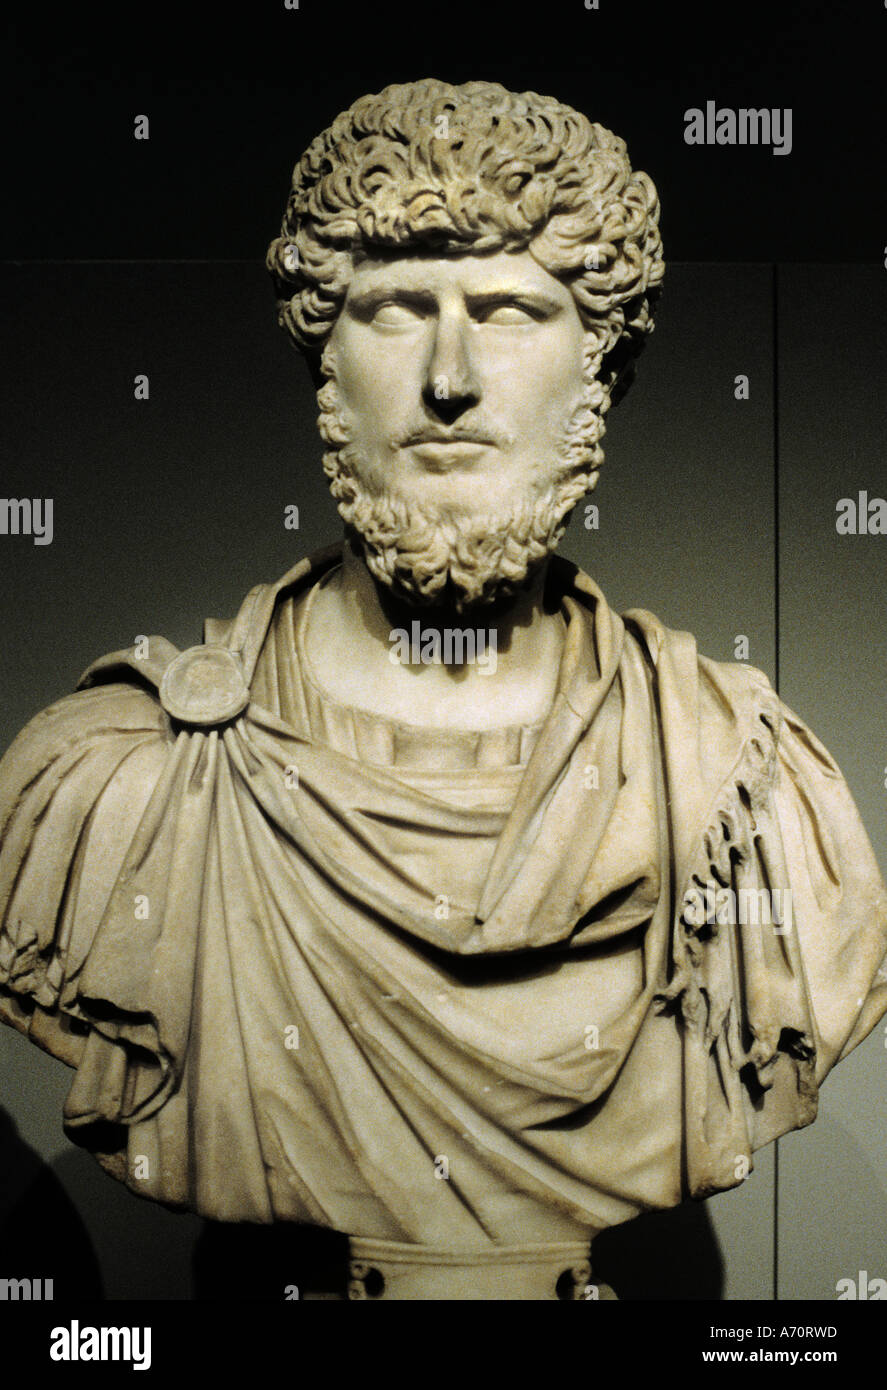 Lucius Aurelius Verus ,130 – 169 war von 161 bis zu seinem Tod 169 römischer Kaiser, neben seinem Adoptivbruder Marcus Aurelius, Rom, Italien, Ital Stockfoto